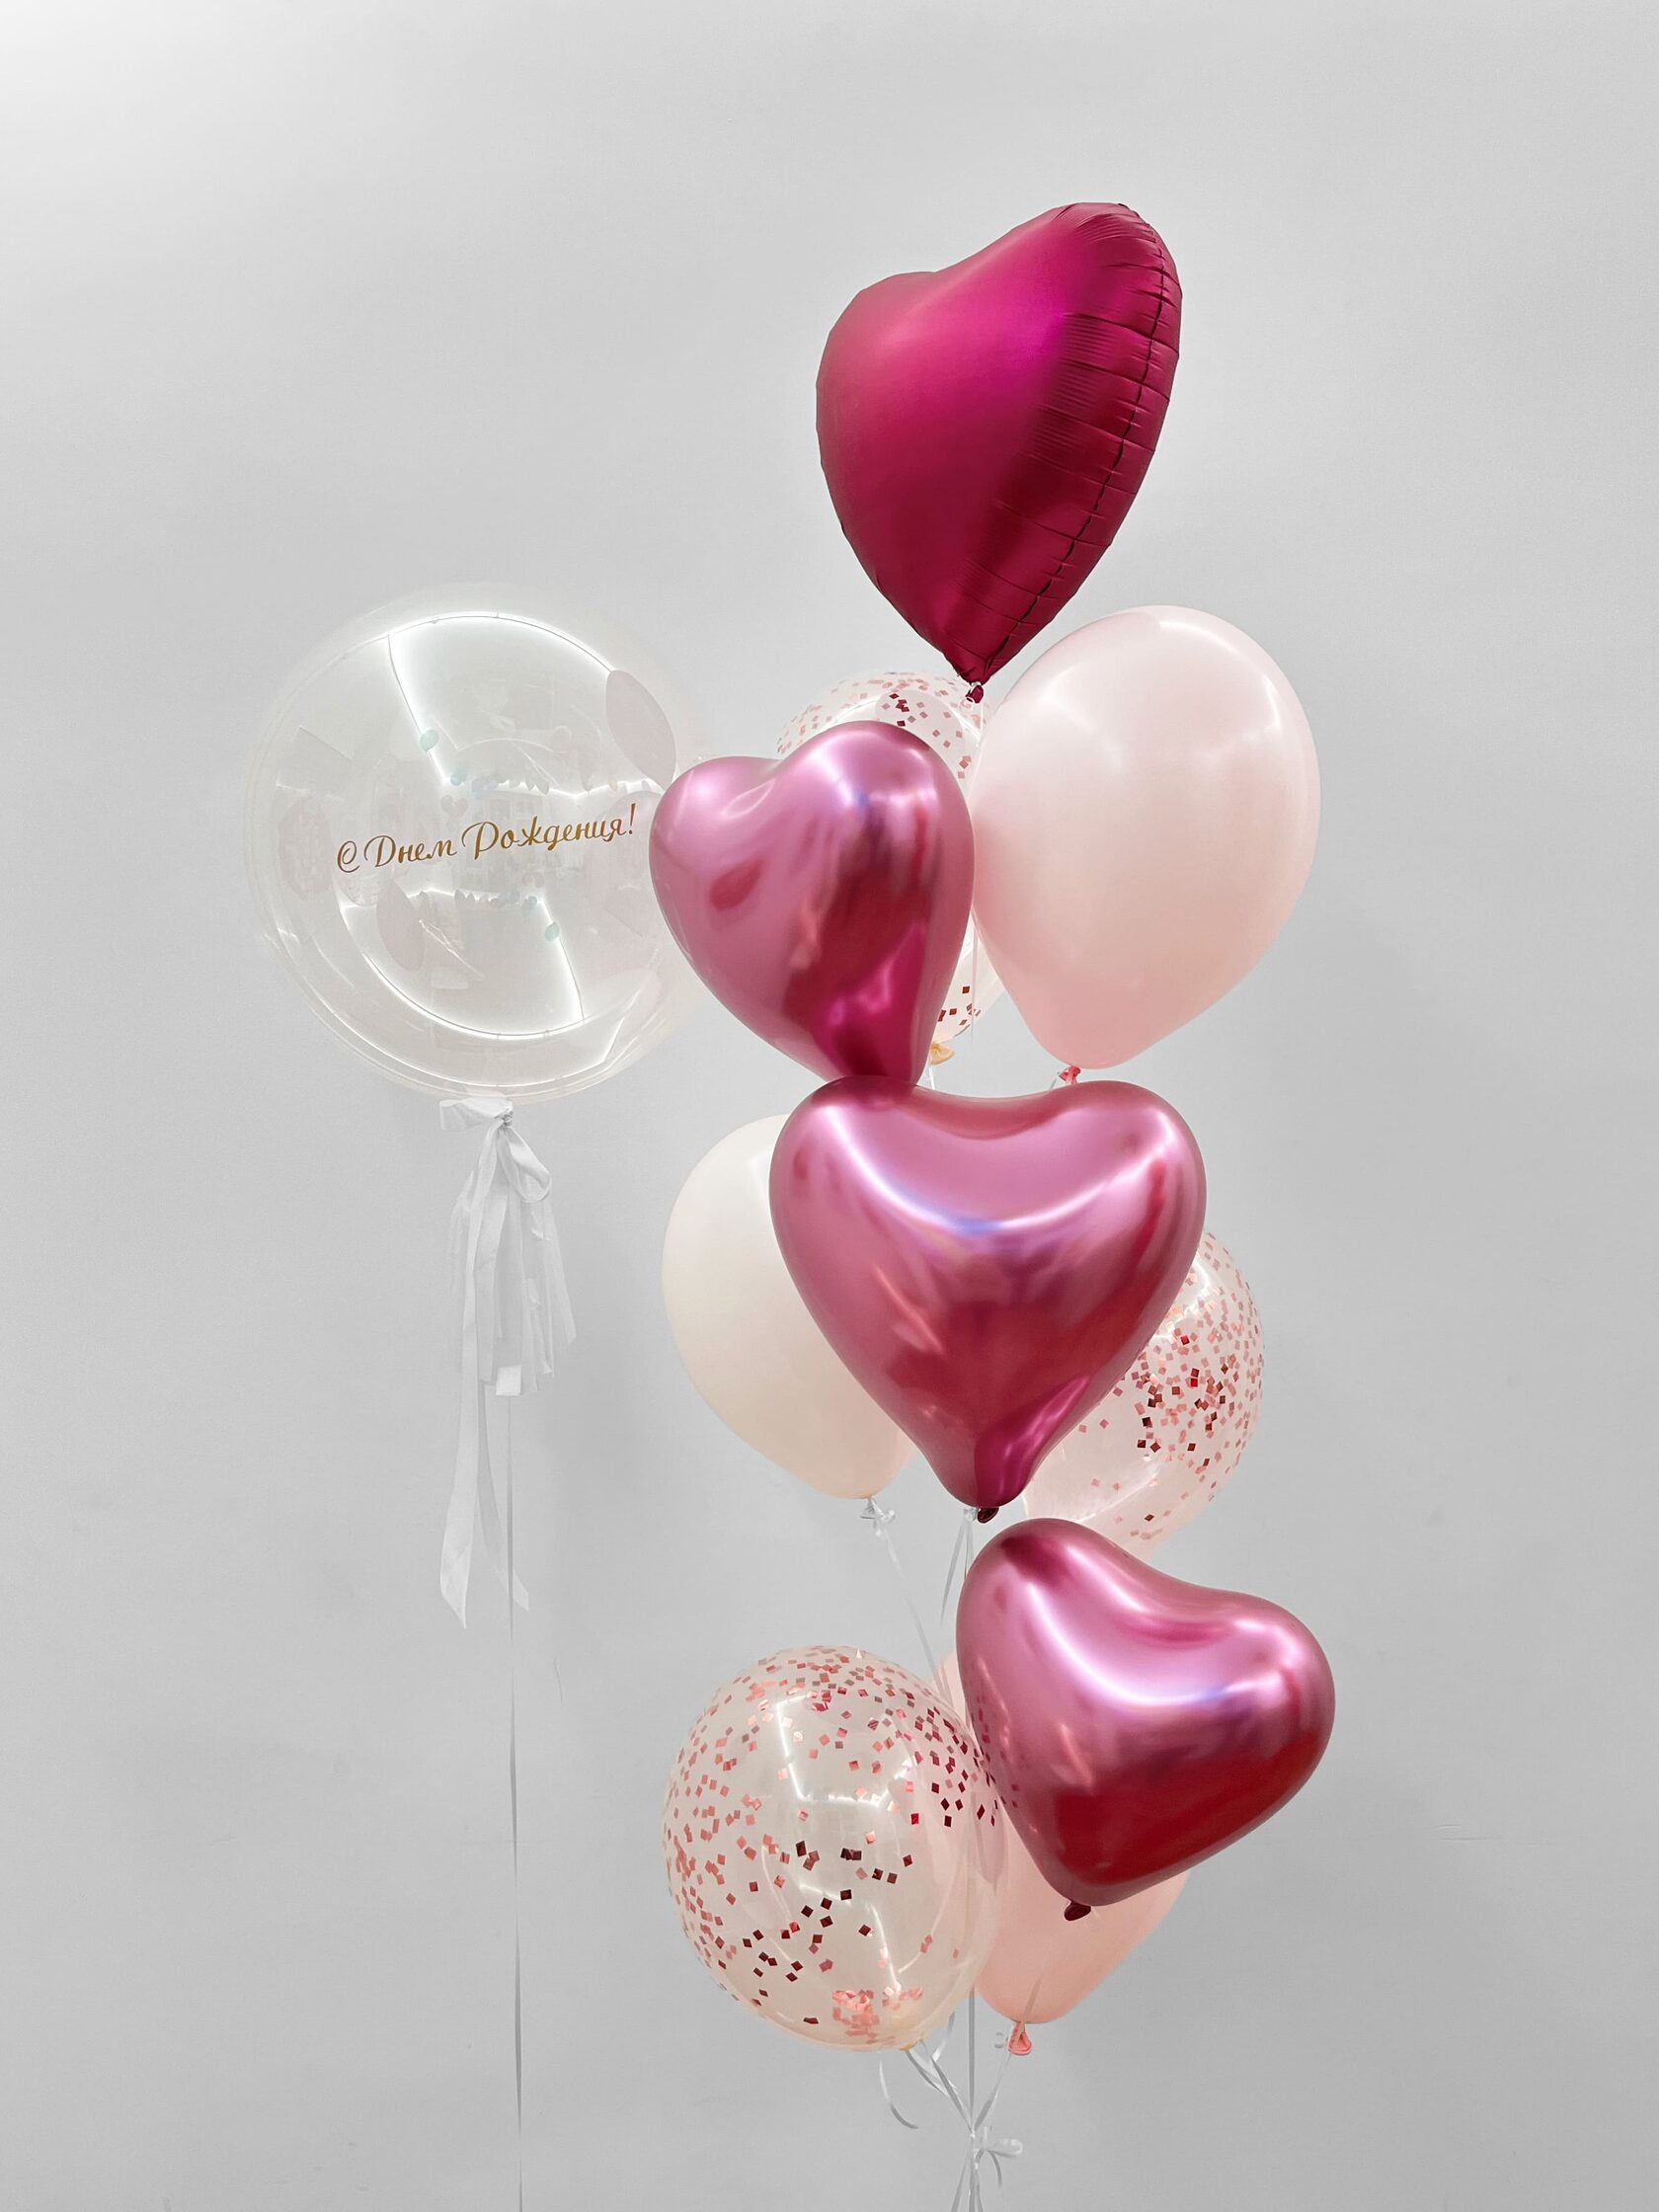 фонтан из шаров нежный кекс Фонтан из шаров «Малиновое сияние» - 10 шаров + шар Bubbles (сфера) - розовое конфетти